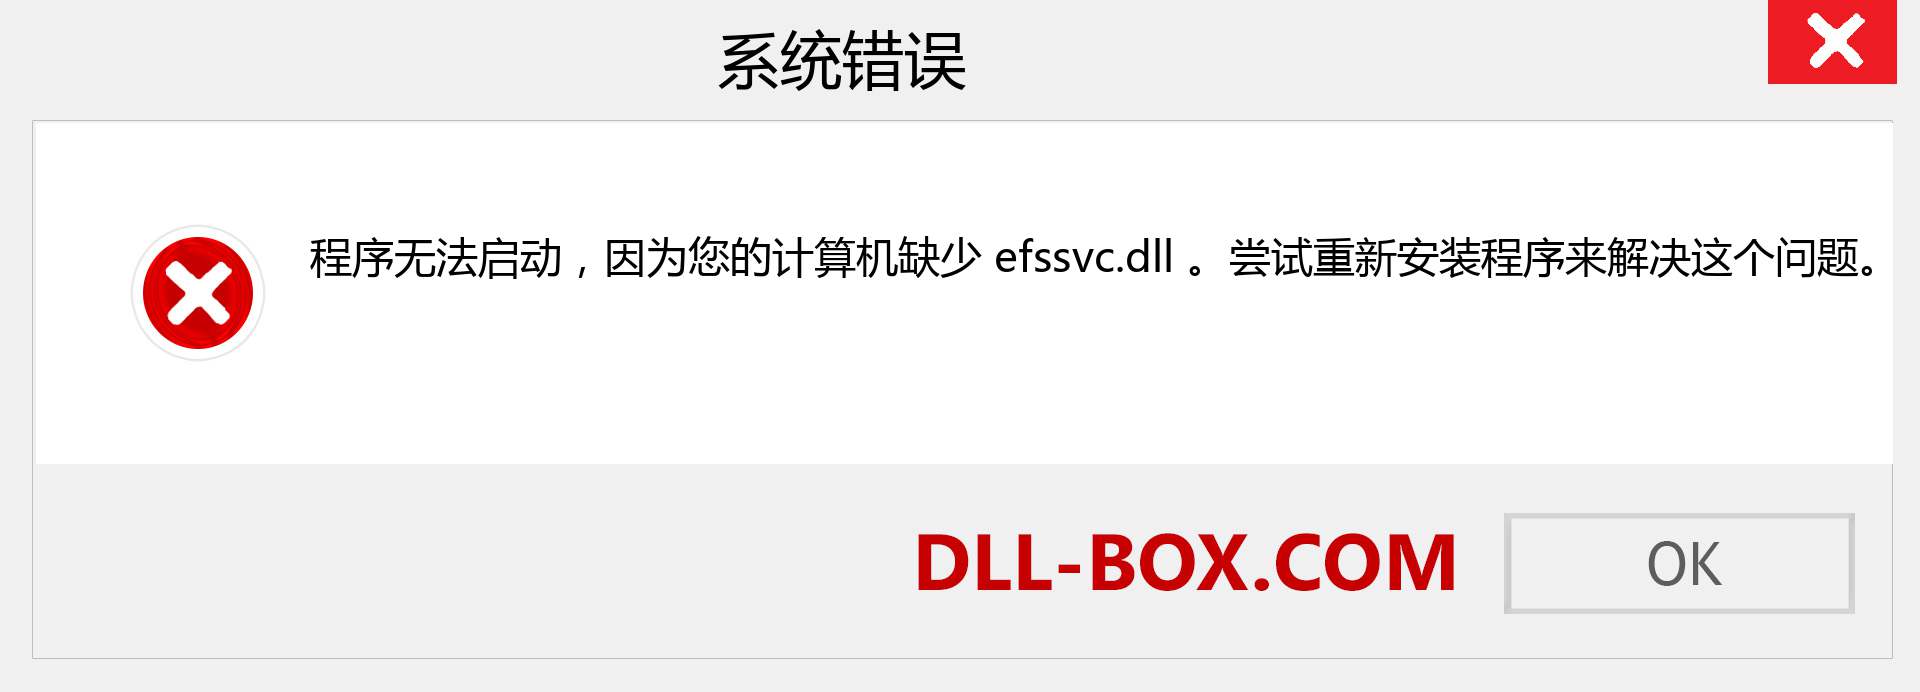 efssvc.dll 文件丢失？。 适用于 Windows 7、8、10 的下载 - 修复 Windows、照片、图像上的 efssvc dll 丢失错误